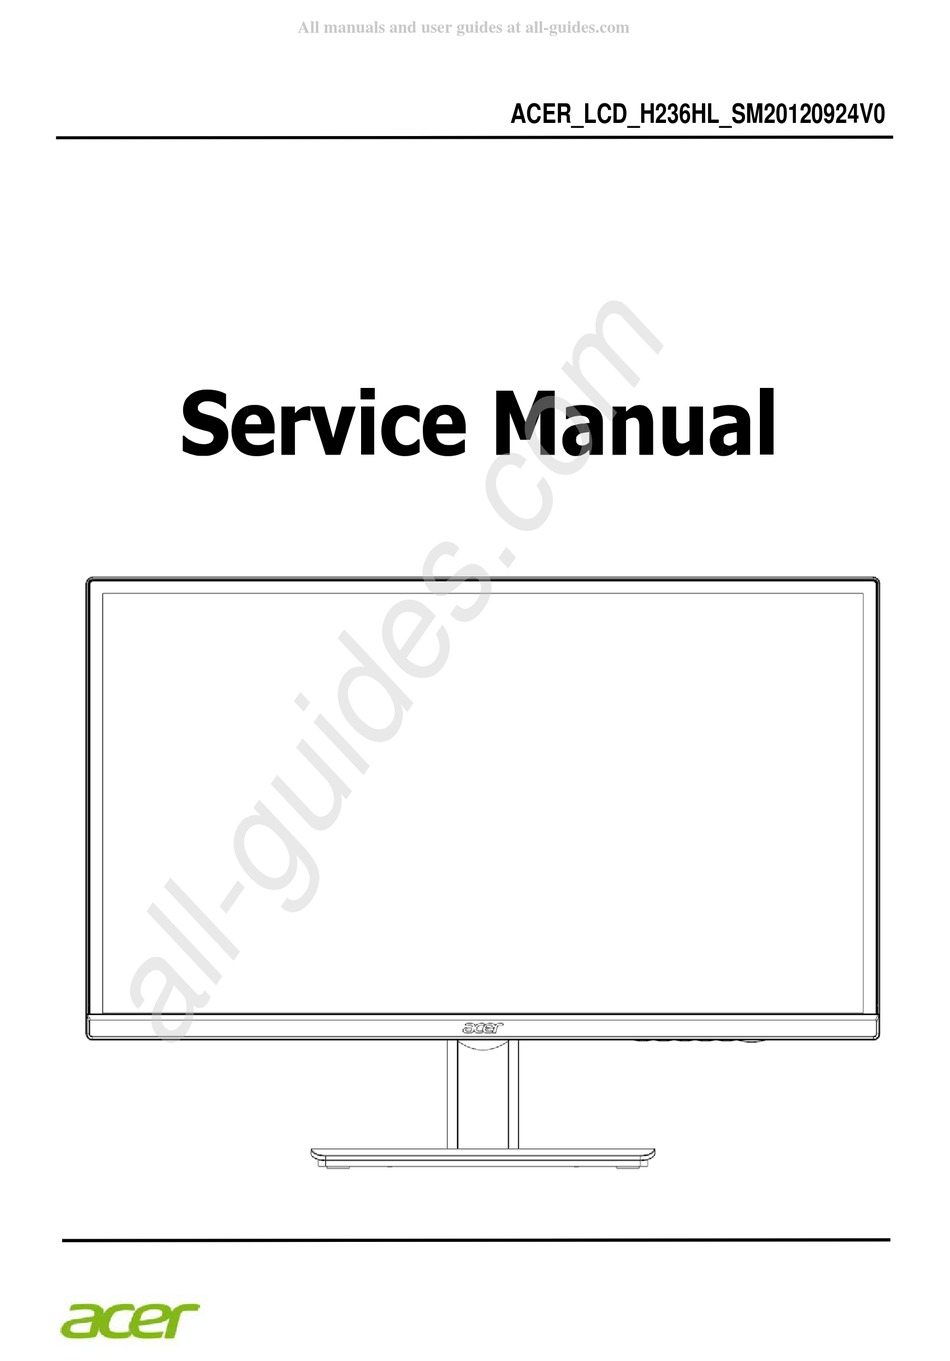 ACER H236HL SERVICE MANUAL Pdf Download | ManualsLib